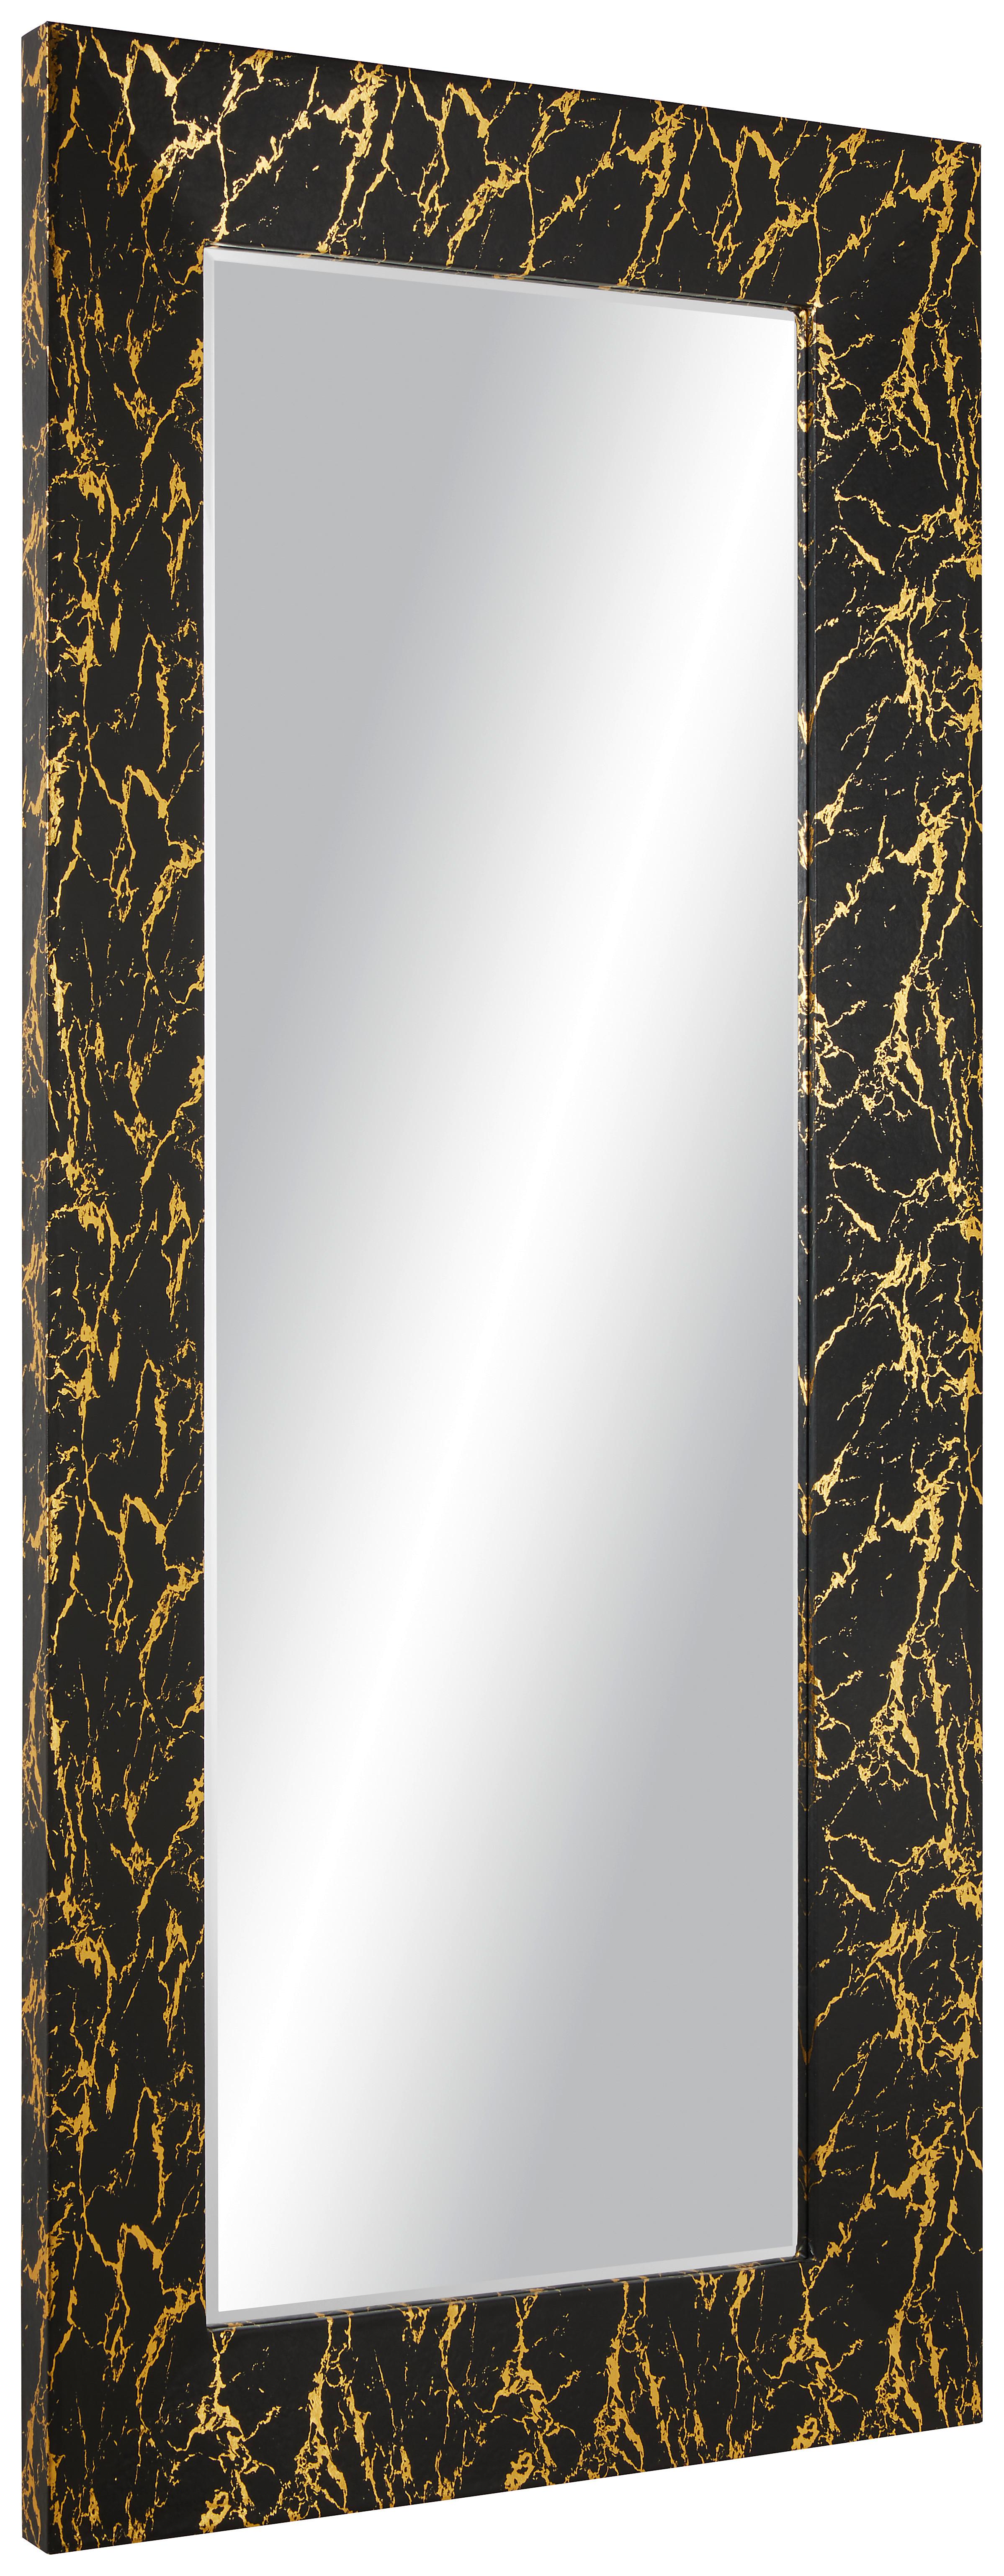 Stensko Ogledalo Glamour, 80 X 180 Cm - zlate barve/črna, Moderno, steklo/leseni material (80/180/5cm) - Modern Living